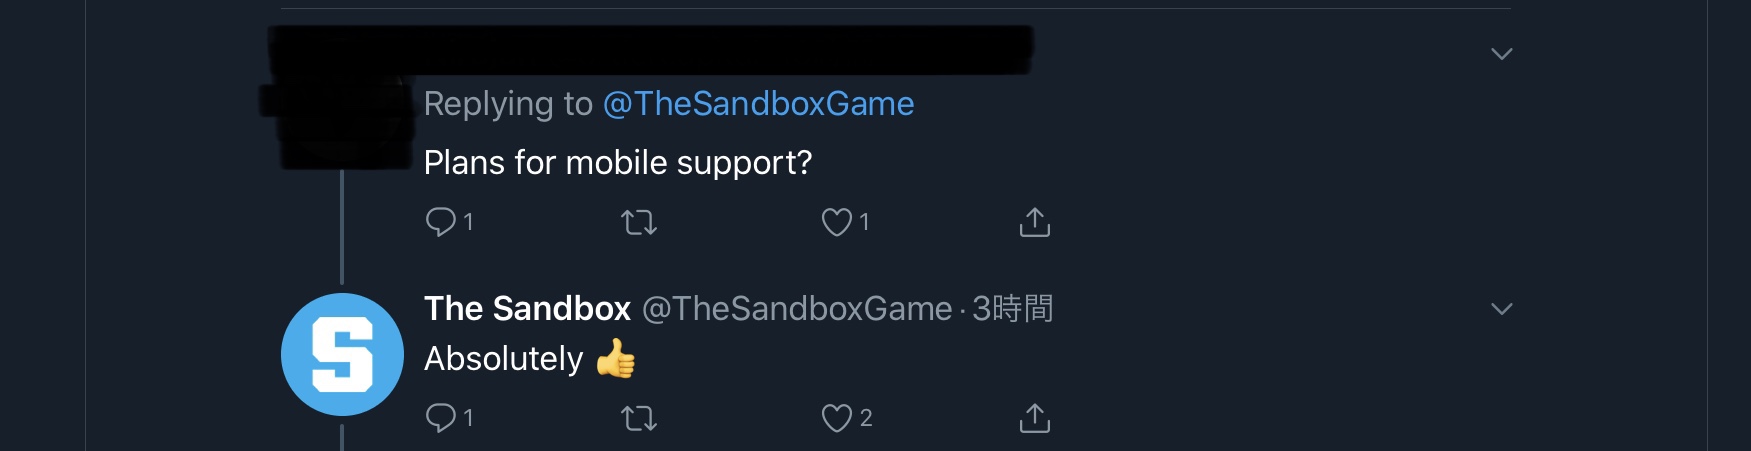 The Sandboxスマホ対応への反応